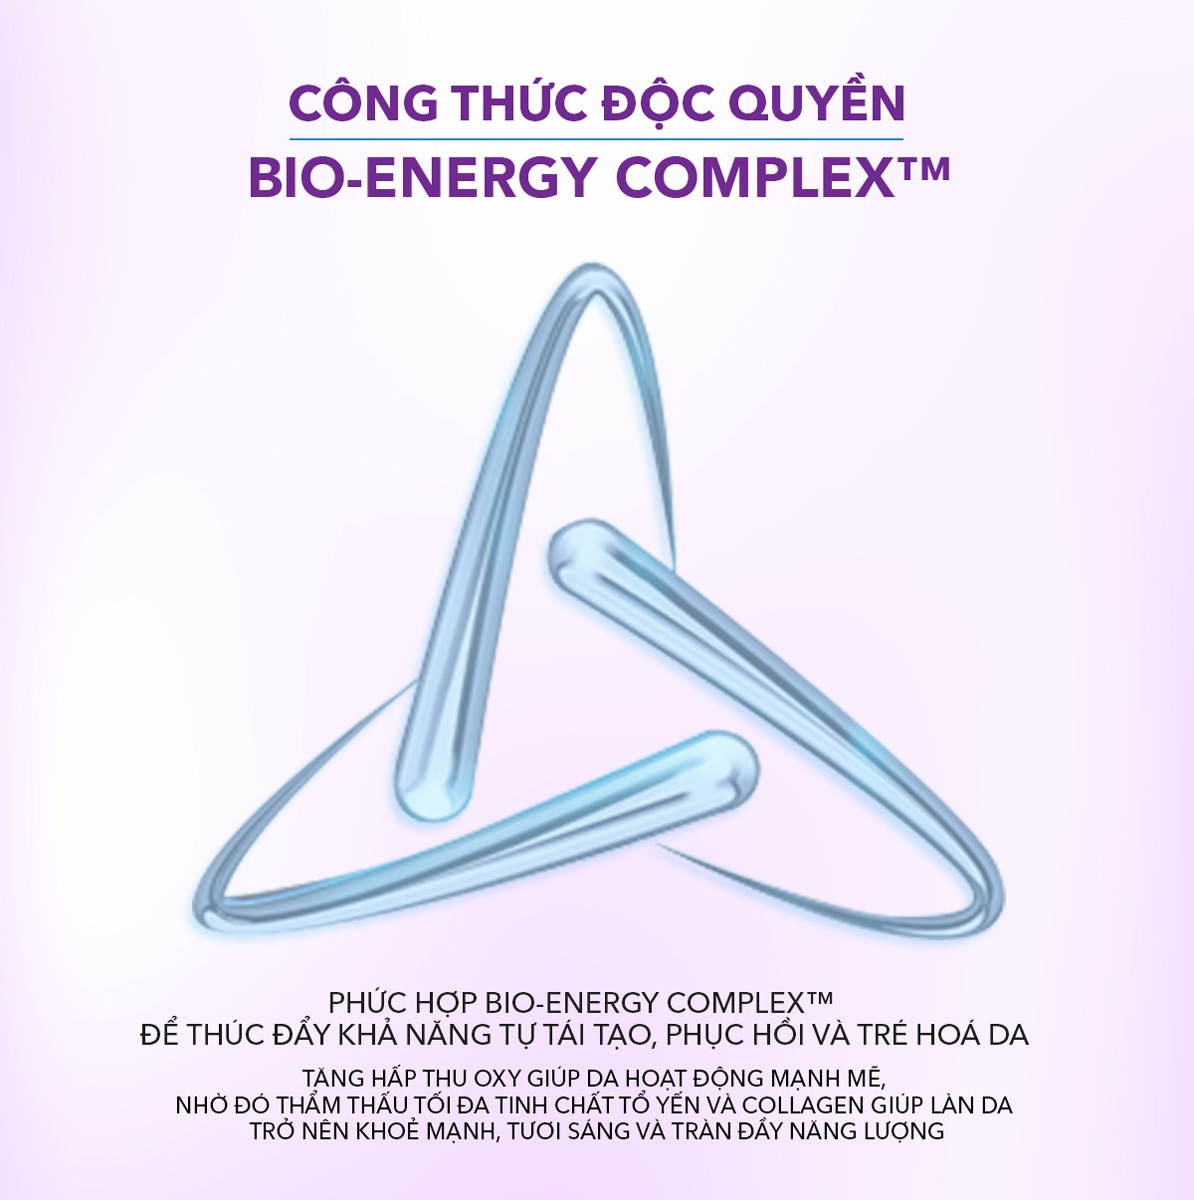 Nước Cân Bằng Bio-essence Bio-Bounce Bird's Nest Collagen Skin Enhancer ứng dụng công thức độc quyền Bio-Energy Complex™ giúp da hấp thu dưỡng chất tốt hơn, làn da trở nên khoẻ mạnh, tươi sáng và tràn đầy năng lượng.